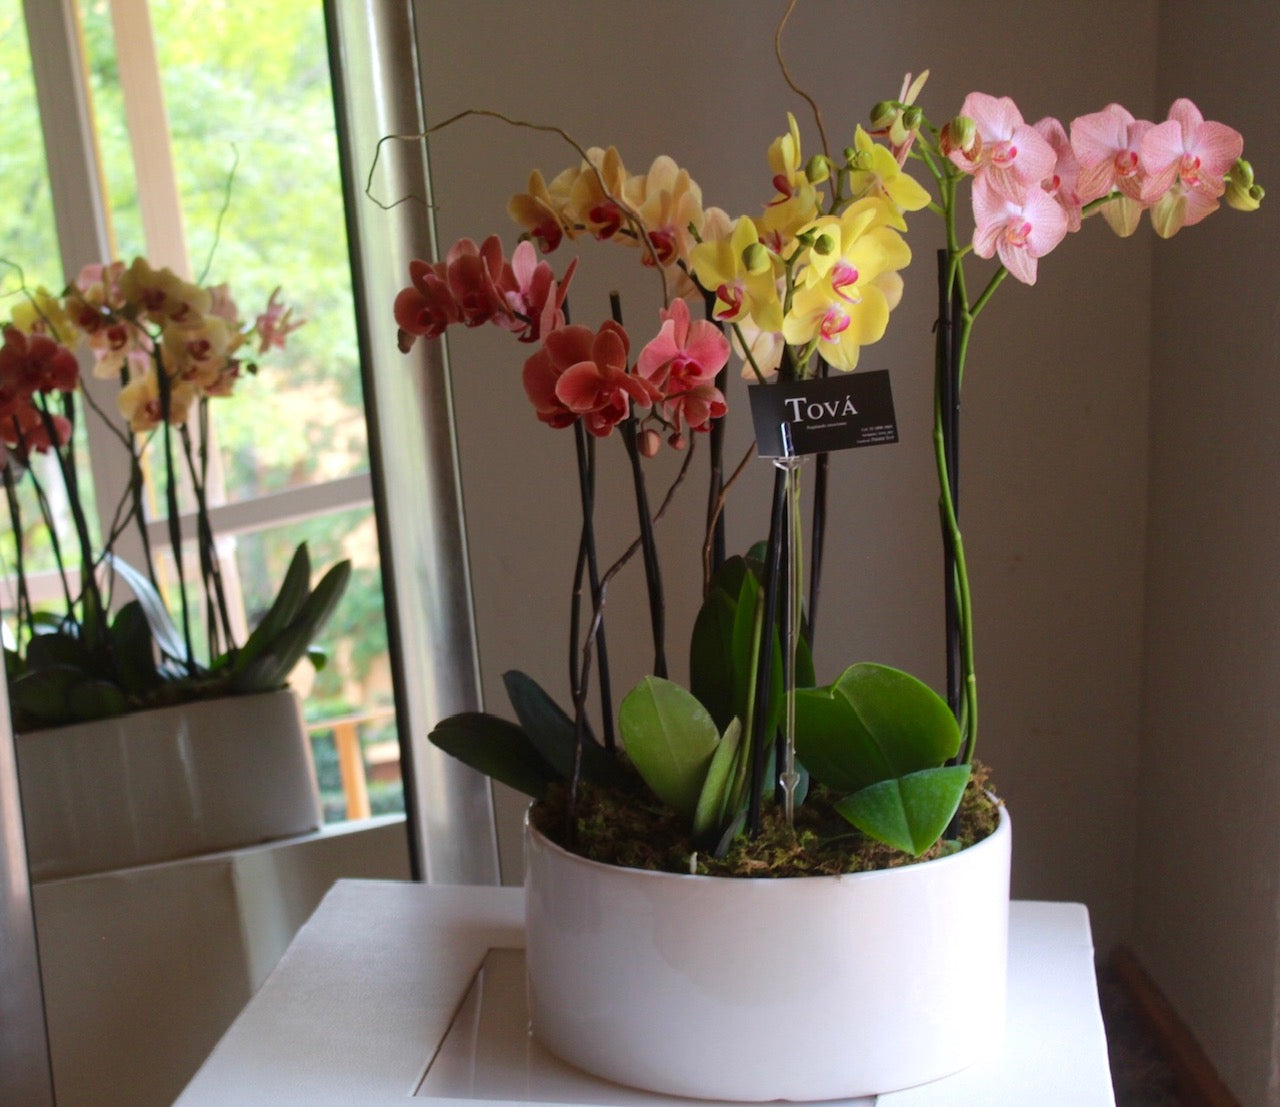 4 orquideas de doble bara en una base de cerámica.